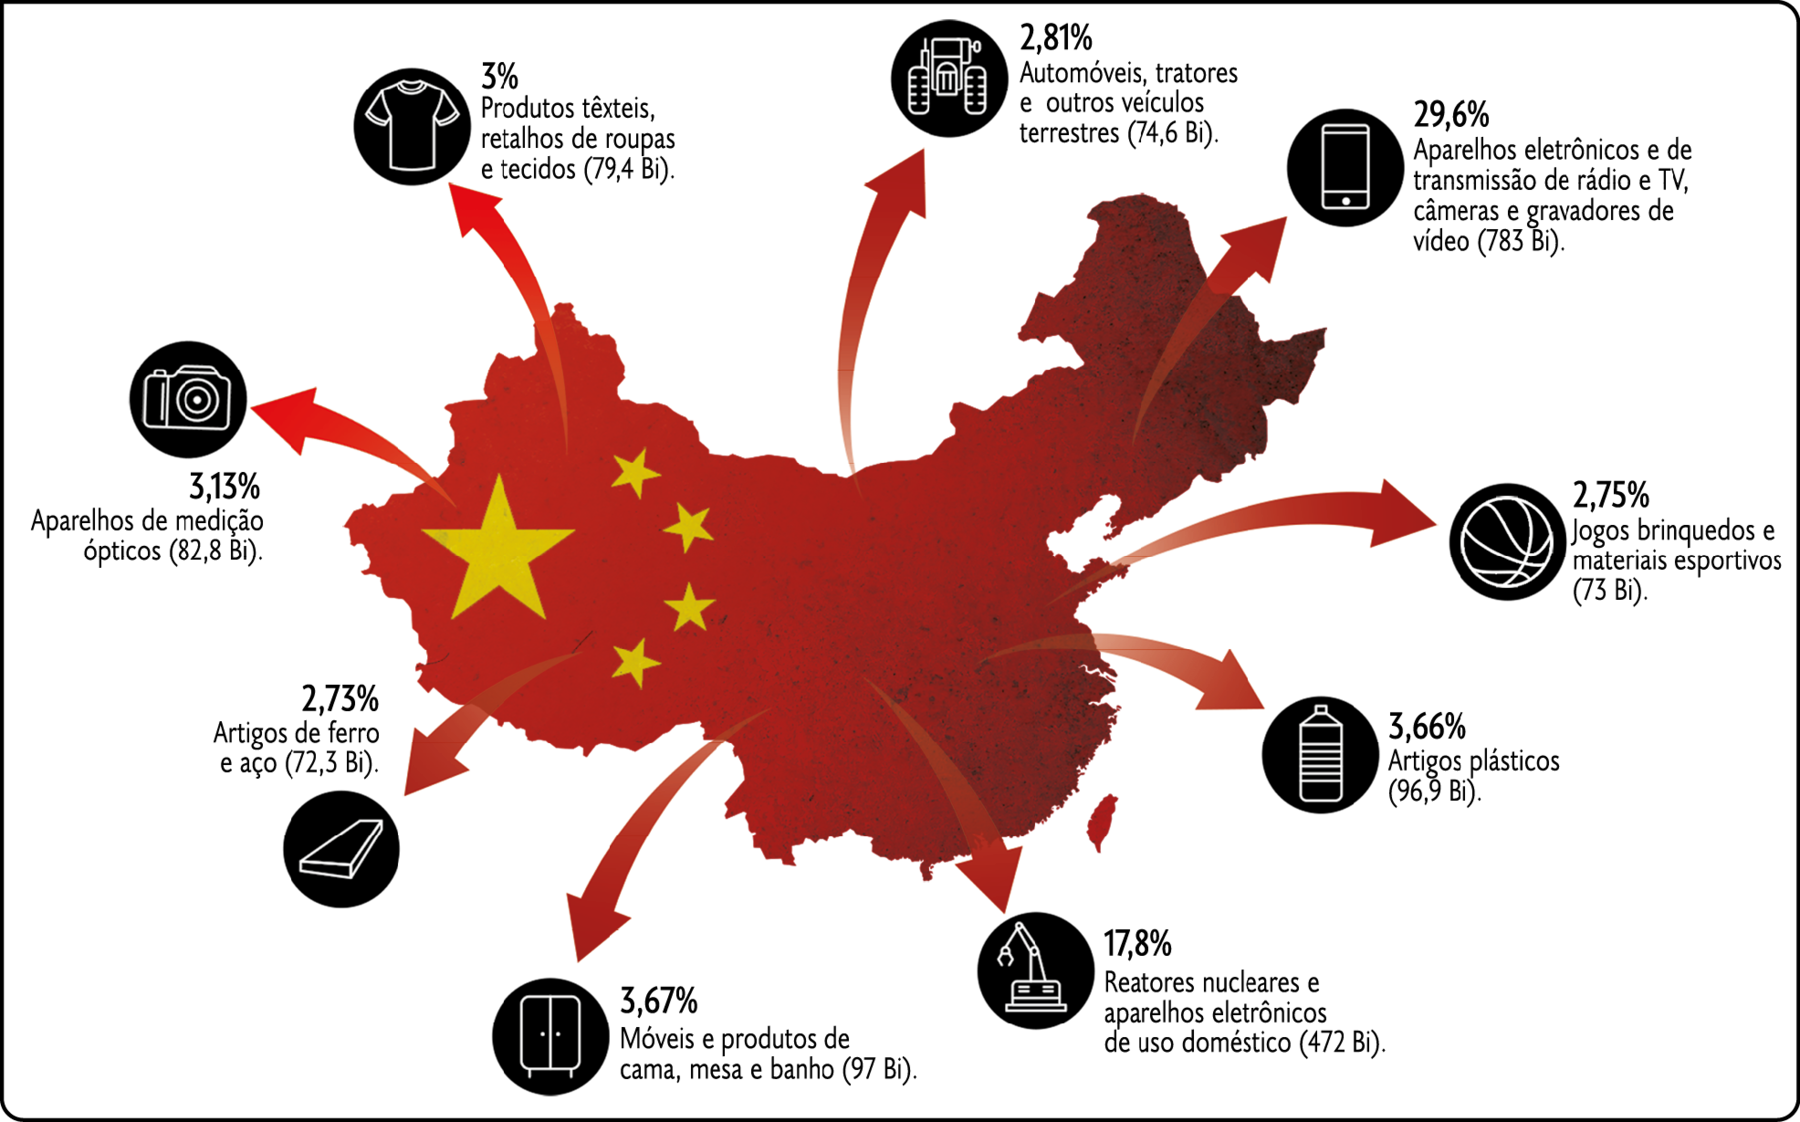 Mapa. Participação dos principais produtos exportados pela China – em bilhões de dólares (2020). Com a bandeira da China sobreposta ao território, de onde partem setas para ícones e informações. Ícone de uma camiseta – 3 por cento. Produtos têxteis retalhos de roupas e tecidos (79,4 bilhões). Ícone de um trator – 2,81 por cento. Automóveis, tratores e outros veículos terrestres (74,6 bilhões). Ícone de um celular – 29,6 por cento. Aparelhos eletrônicos e de transmissão de rádio e TV, câmeras e gravadores de vídeo (783 bilhões). Ícone de uma bola de basquete – 2,75 por cento. Jogos, brinquedos e materiais esportivos (73 bilhões). Ícone de uma garrafa – 3,66 por cento, Artigos plásticos (96,9 bilhões). Ícone de um equipamento com um braço mecânico – 17,8 por cento. Reatores nucleares e aparelhos eletrônicos de uso doméstico (472 bilhões). Ícone de um armário – 3,67 por cento. Móveis e produtos de cama, mesa e banho (97 bilhões). Ícone de uma placa retangular – 2,73 por cento, Artigos de ferro e aço (72,3 bilhões). Ícone de uma câmera fotográfica – 3,13 por cento. Aparelhos de medição ópticos (82,8 bilhões).